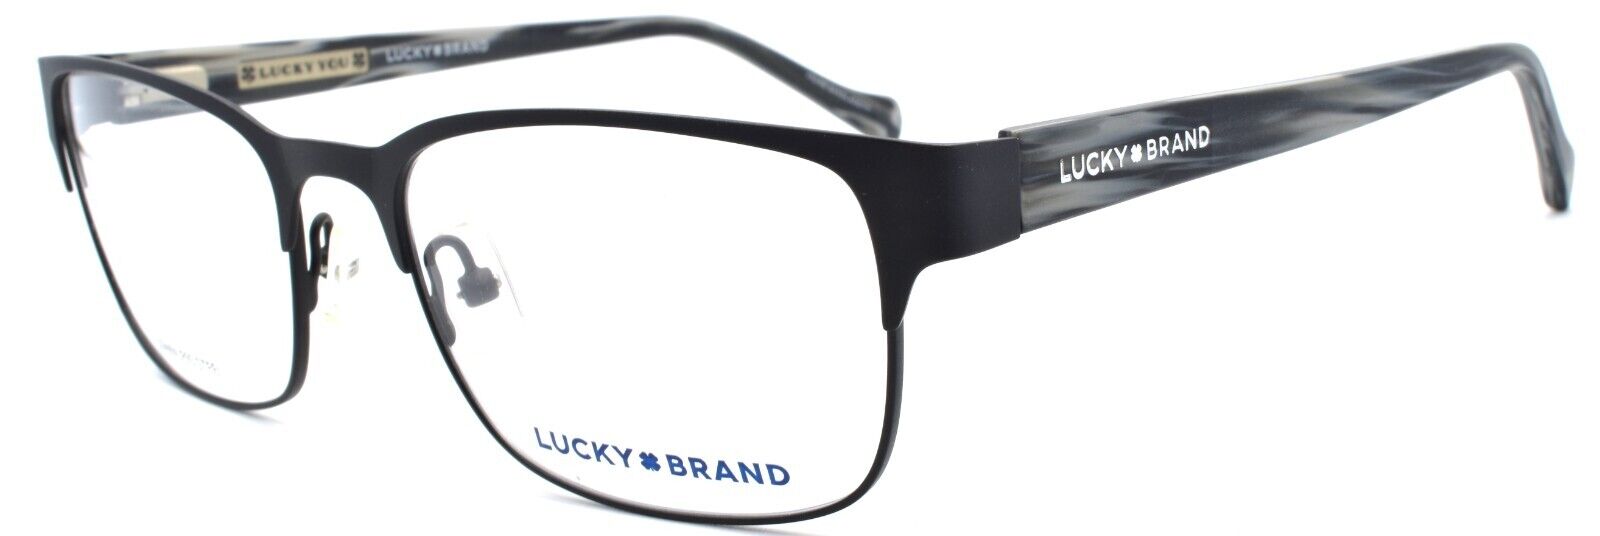 1-LUCKY BRAND D301 Men's Eyeglasses Frames 53-18-140 Black-751286281835-IKSpecs